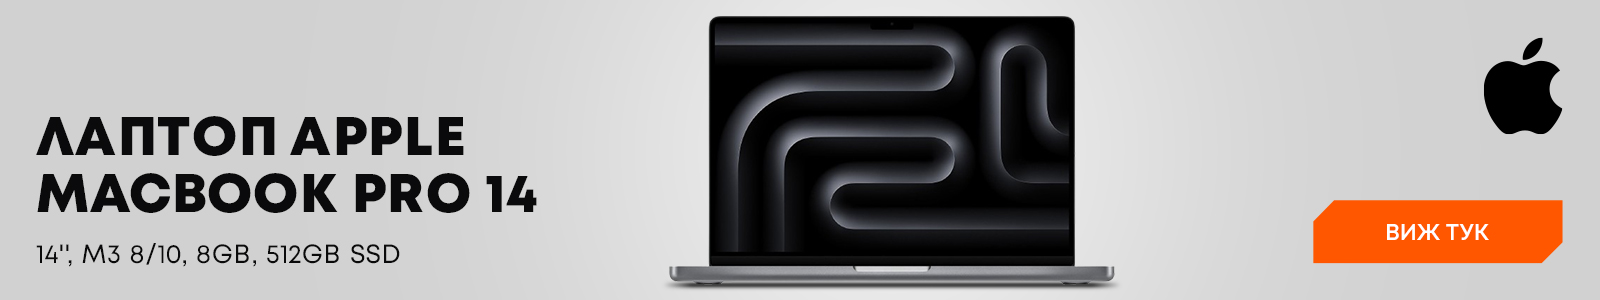 Лаптоп Apple - MacBook Pro 14, М3